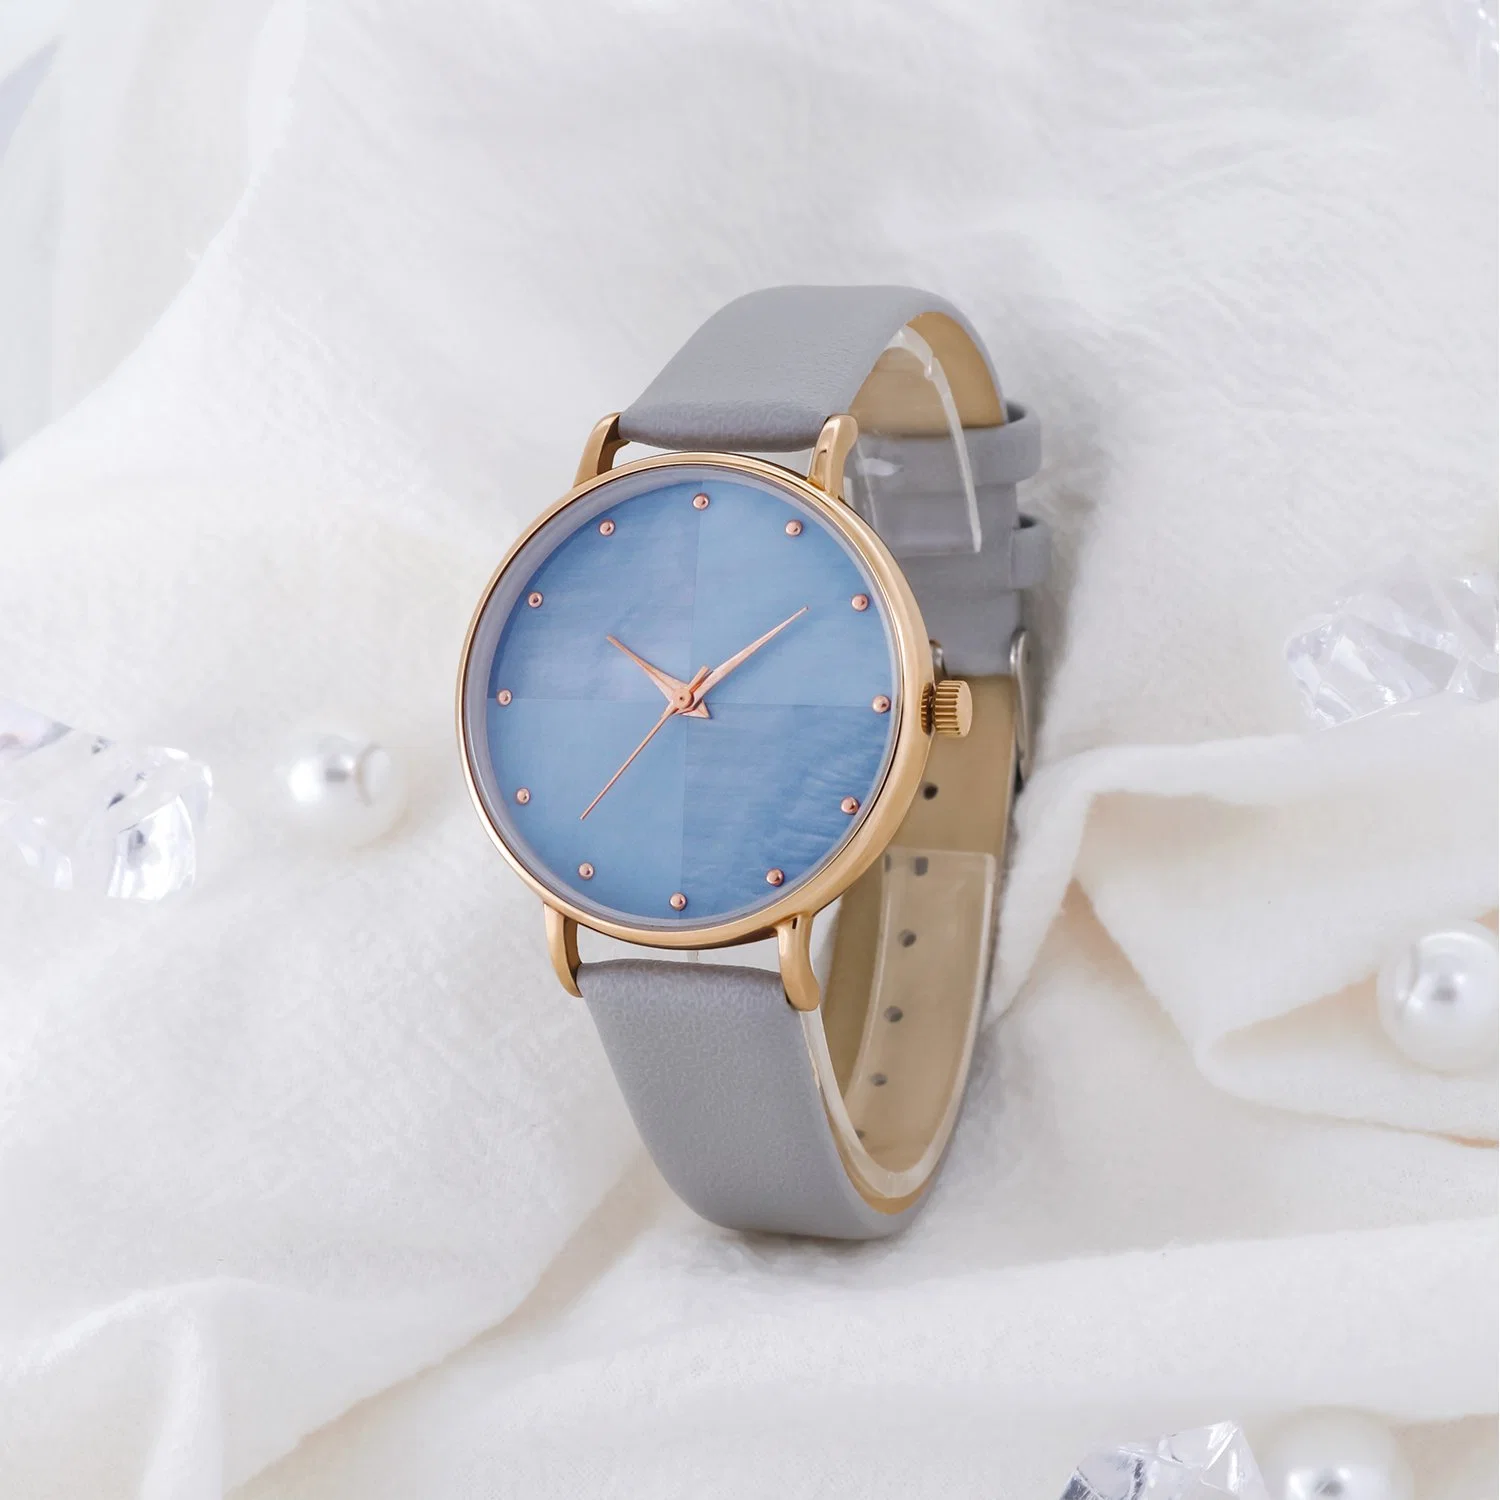 Heißer Verkauf Minimalist Handgelenk Sport Quarz Watch Frauen Metall Dame Uhren für Geschenk Promotion Handgelenkuhr Quarzuhr